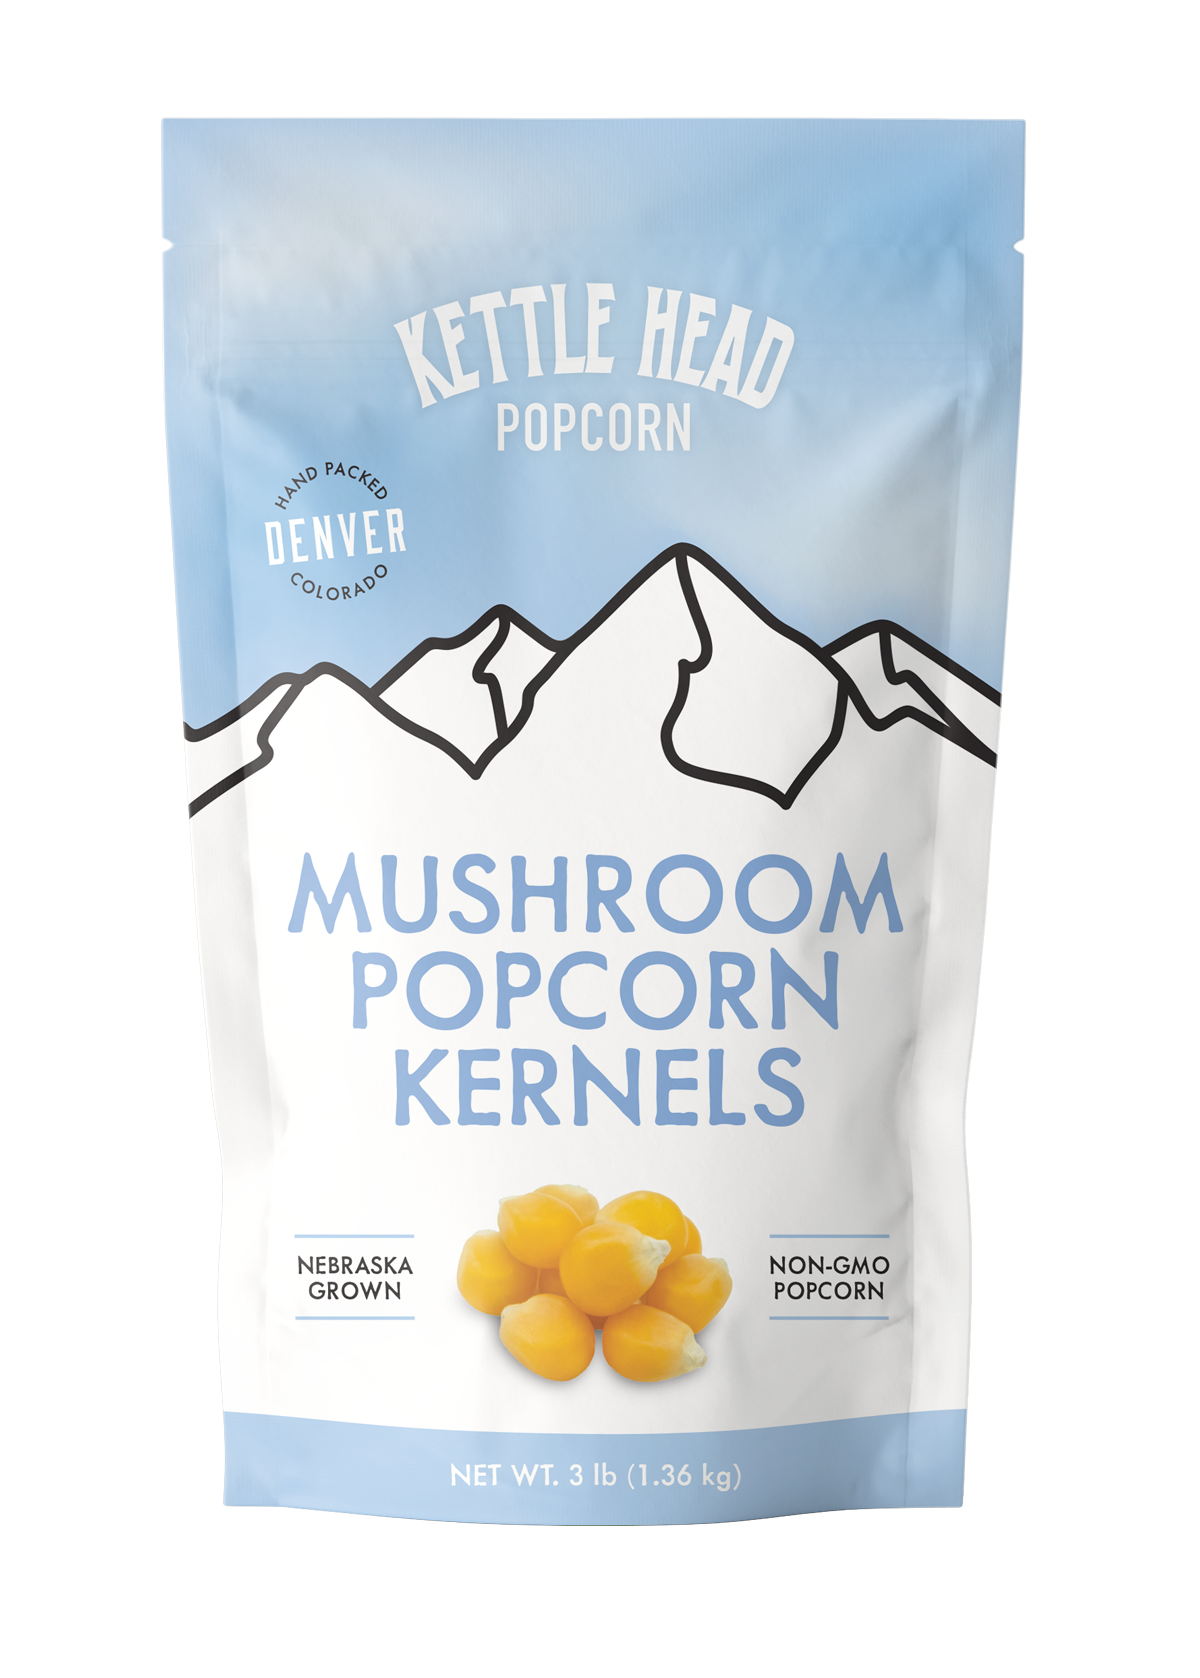 Mushroom Kernels — Kettle Head Popcorn